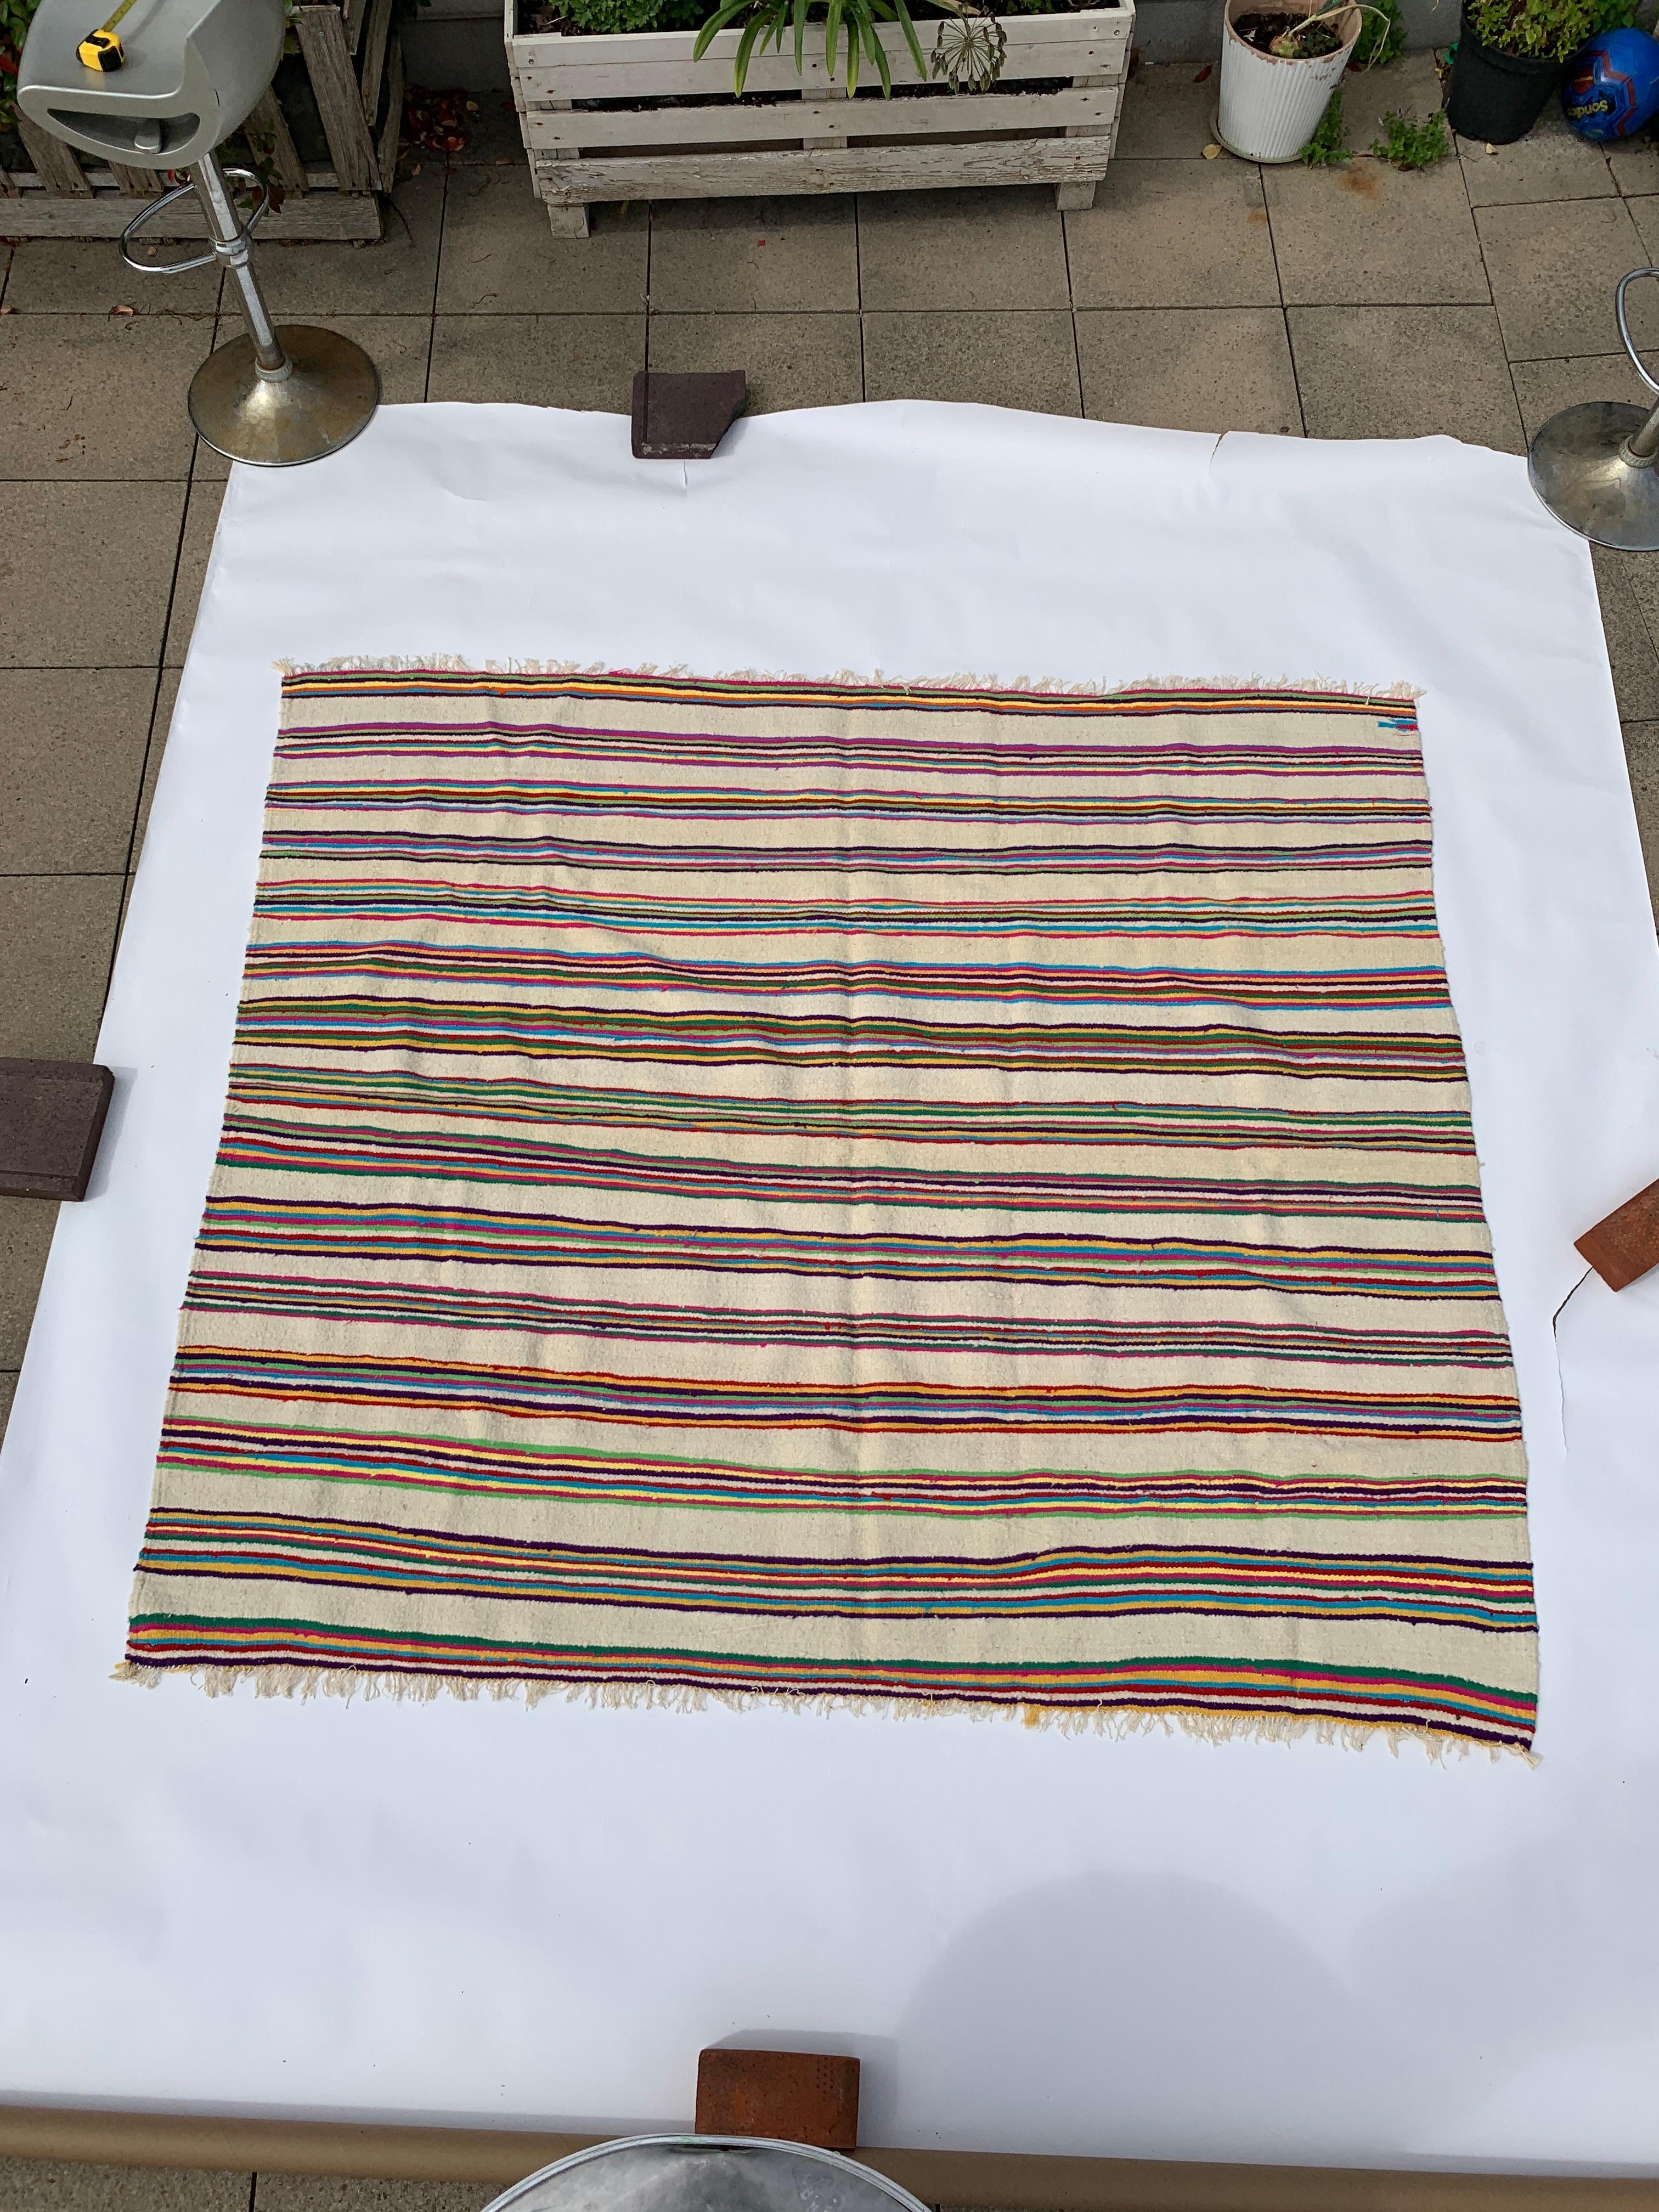 Ein Vintage-Teppich aus Berberwolle in beiger Grundfarbe mit mehrfarbigen Streifen, die in Gruppen angeordnet sind. Die Streifengruppen sind in Zehnerreihen angeordnet. 

Die mehrfarbigen Streifen des Teppichs sind visuell auffällig und schaffen ein